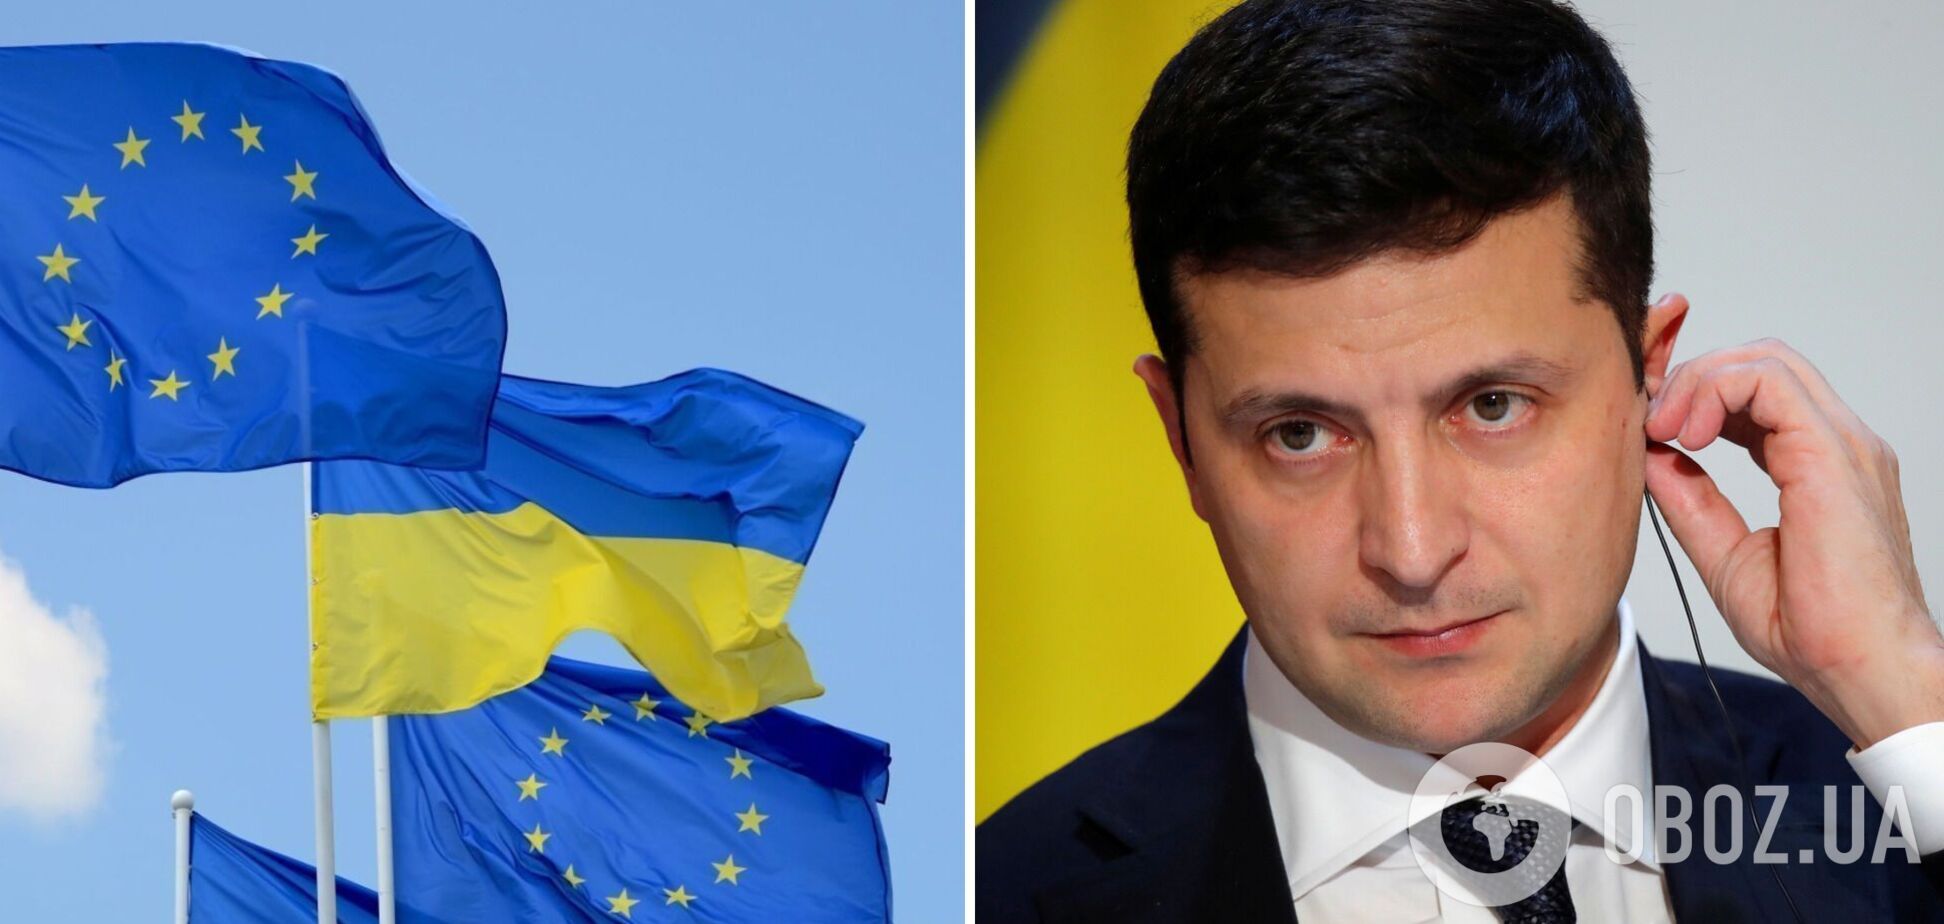 Зеленський: настав вирішальний момент, щоб ухвалити рішення про членство України в ЄС